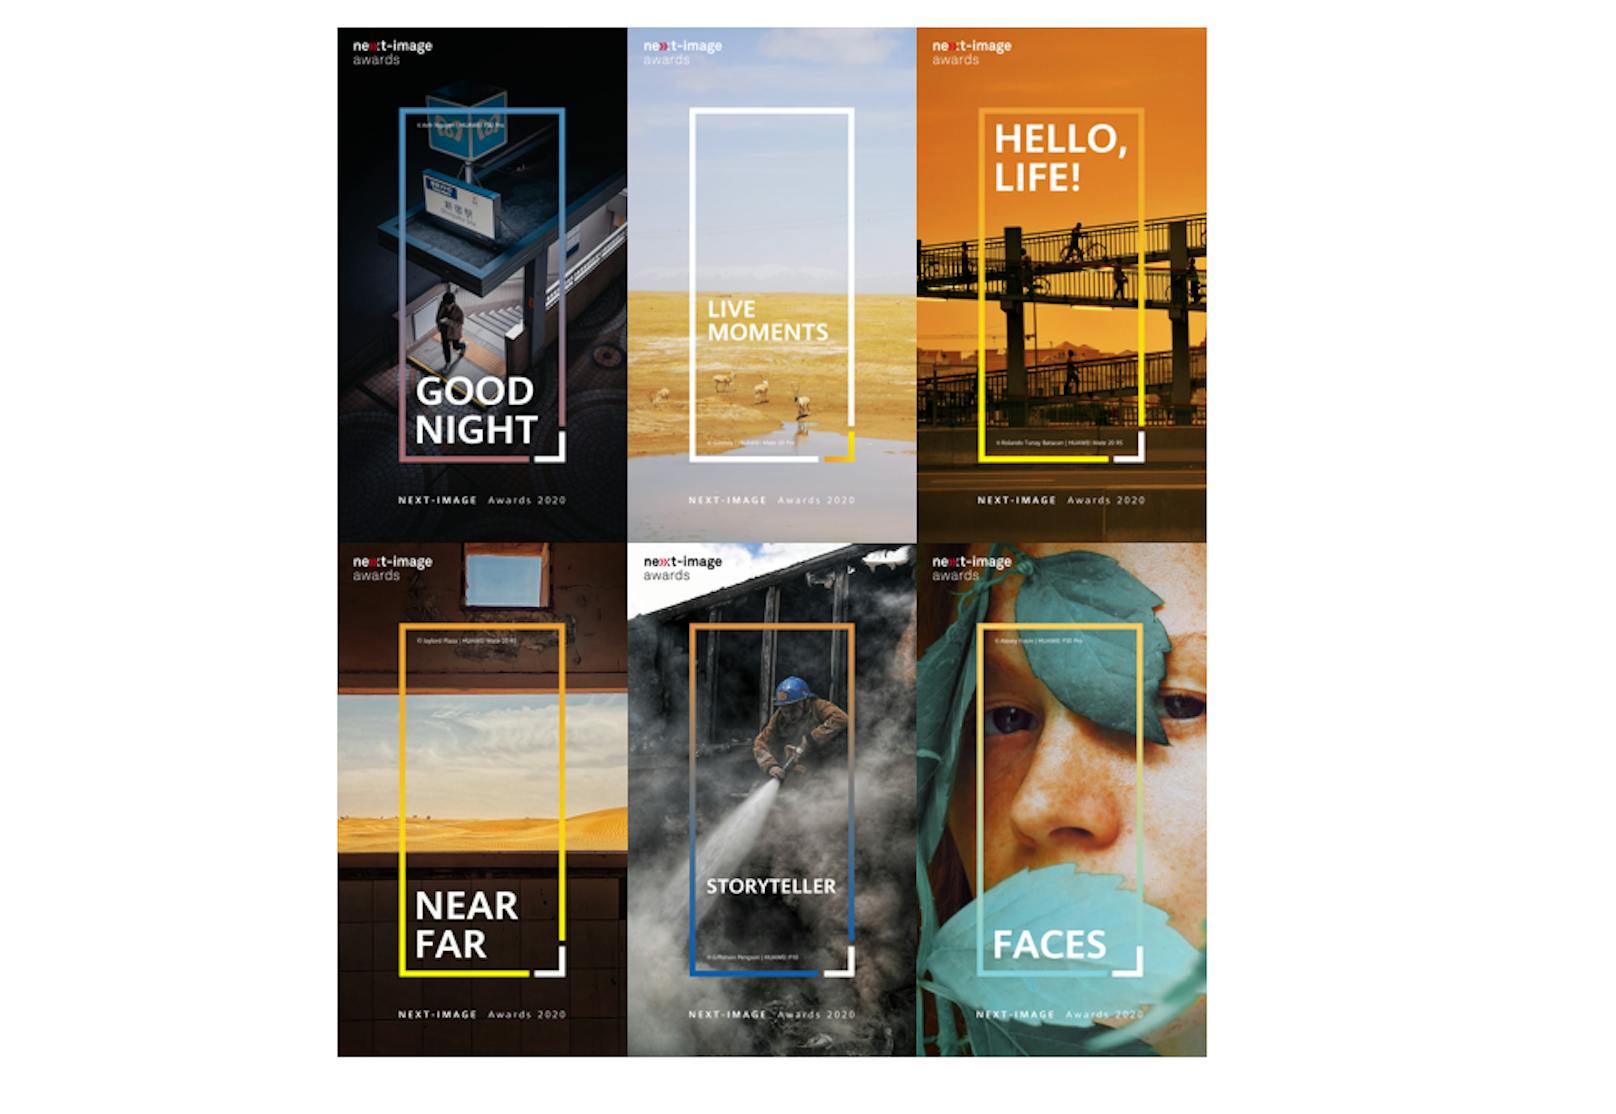 Der Huawei Next-Image Award 2020 krönt die weltweit besten Fotos und Videos.